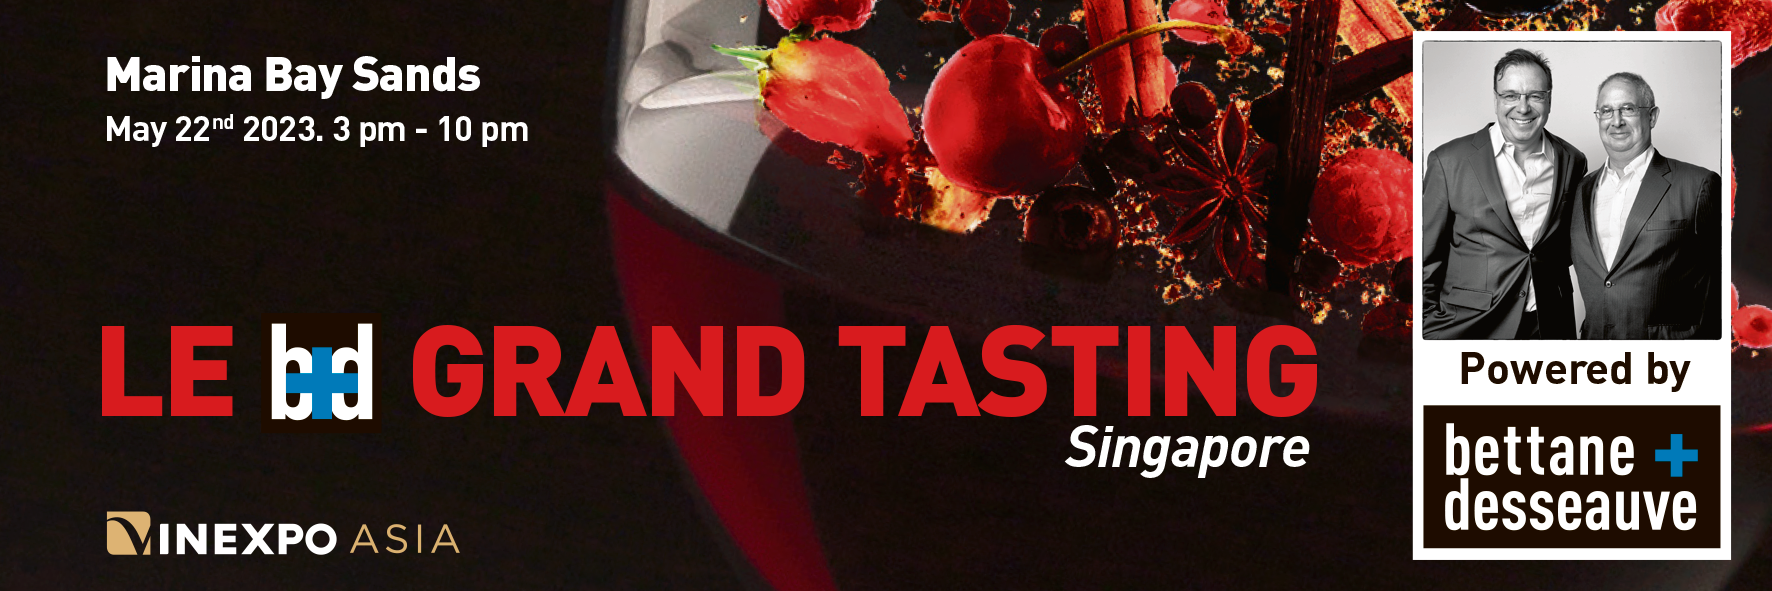 Le B+D Grand Tasting Singapore